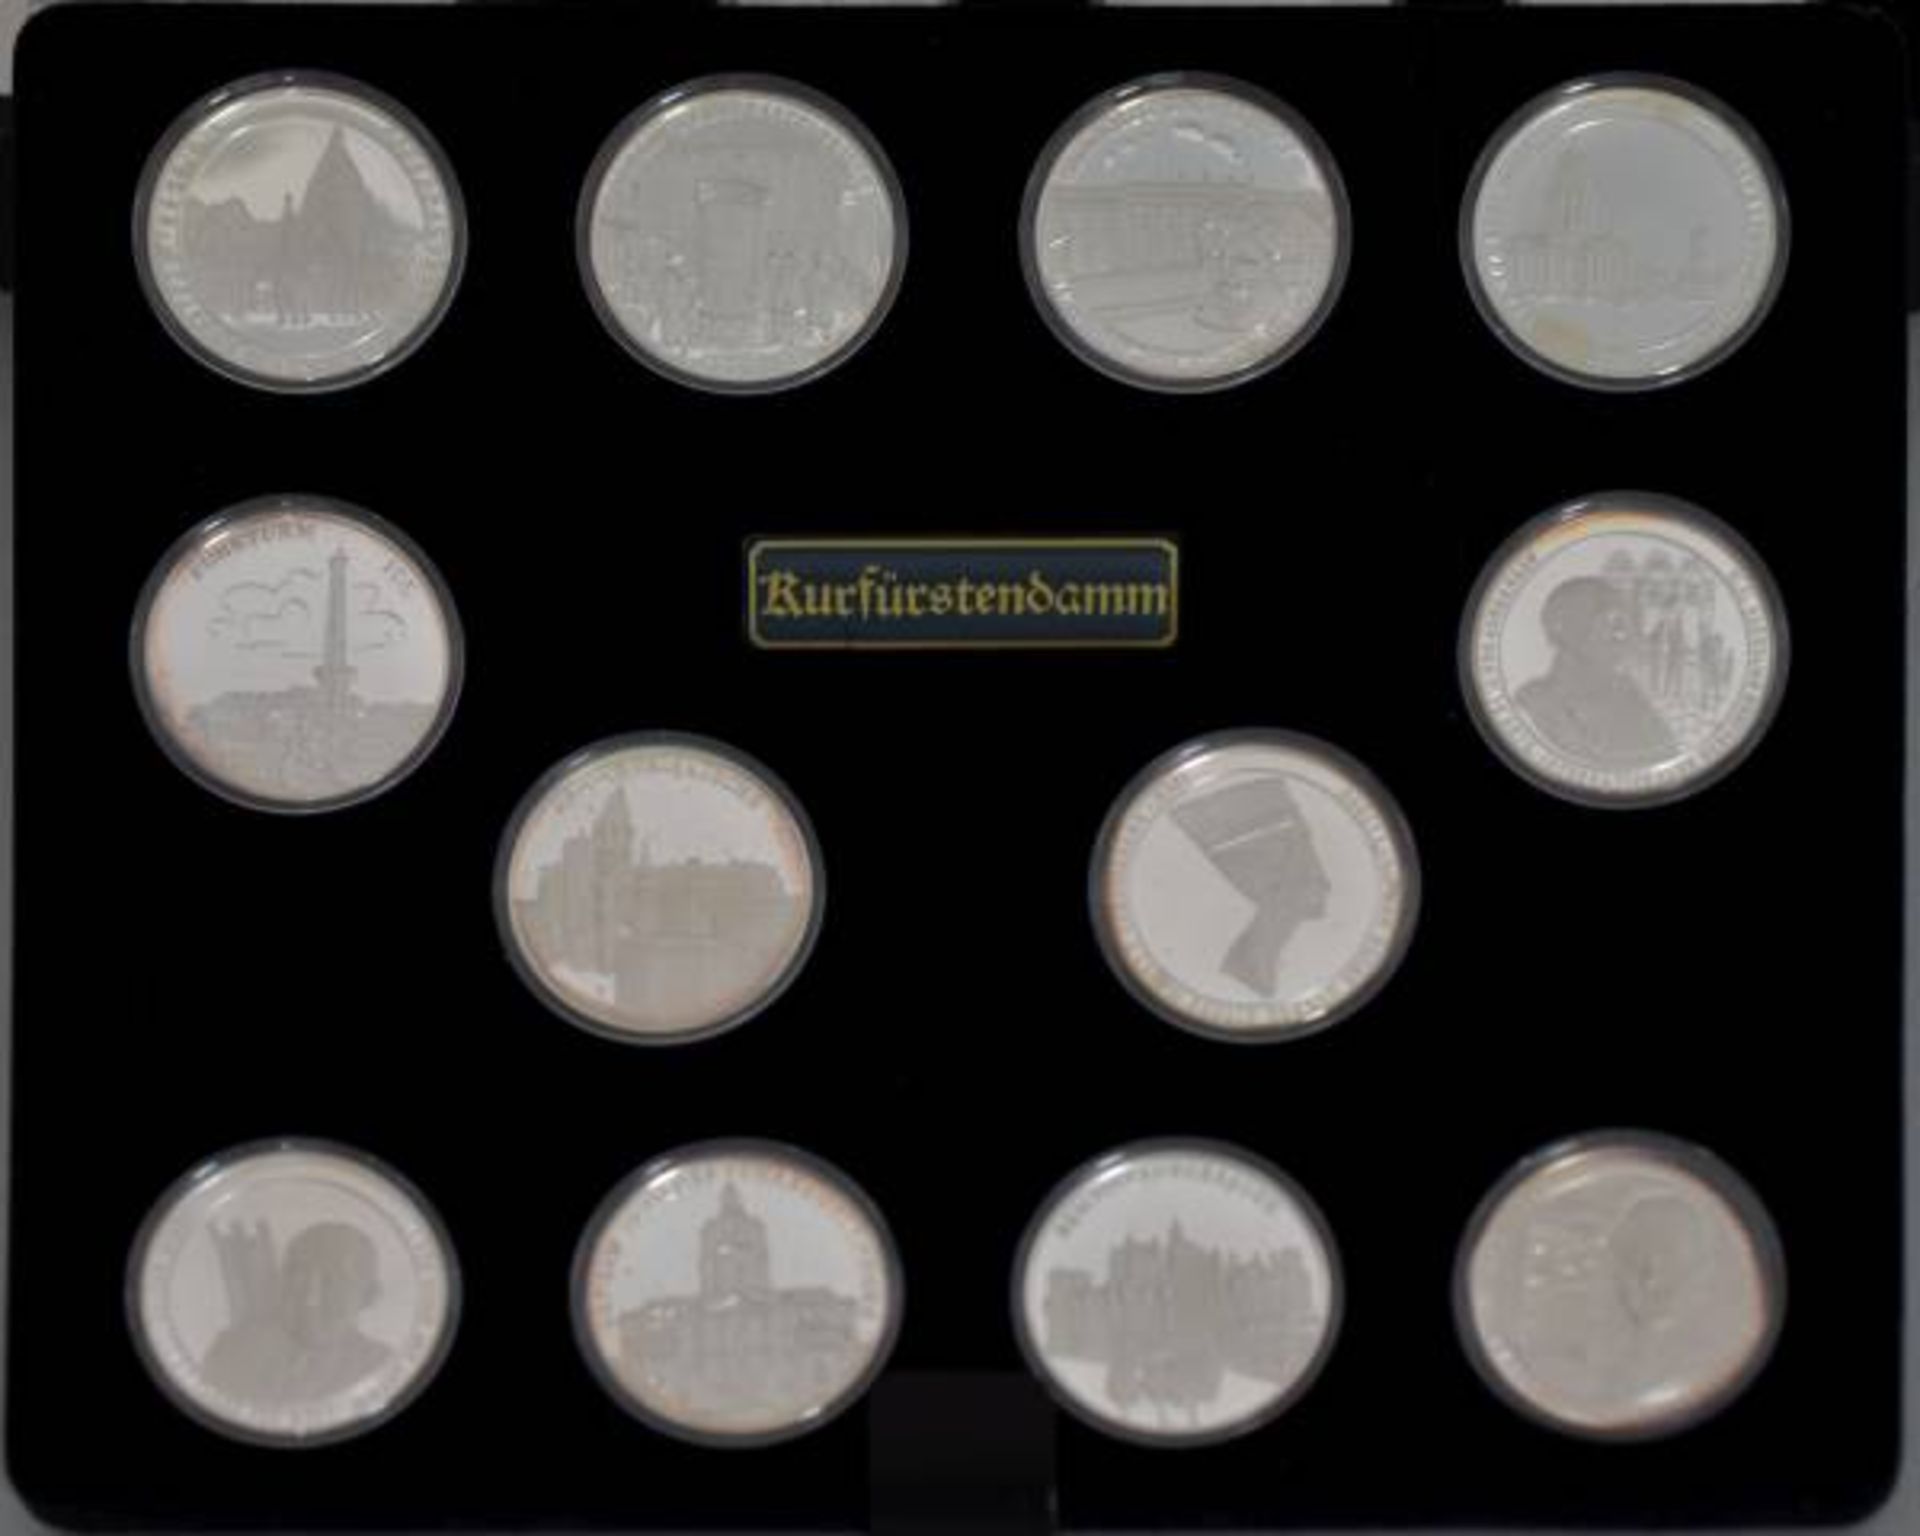 GEDENKMÜNZEN 750 JAHRE BERLIN Silbermedaillensammlung, 24 Medaillen, Feinsilber 999/1000, D 40 mm, - Bild 2 aus 3